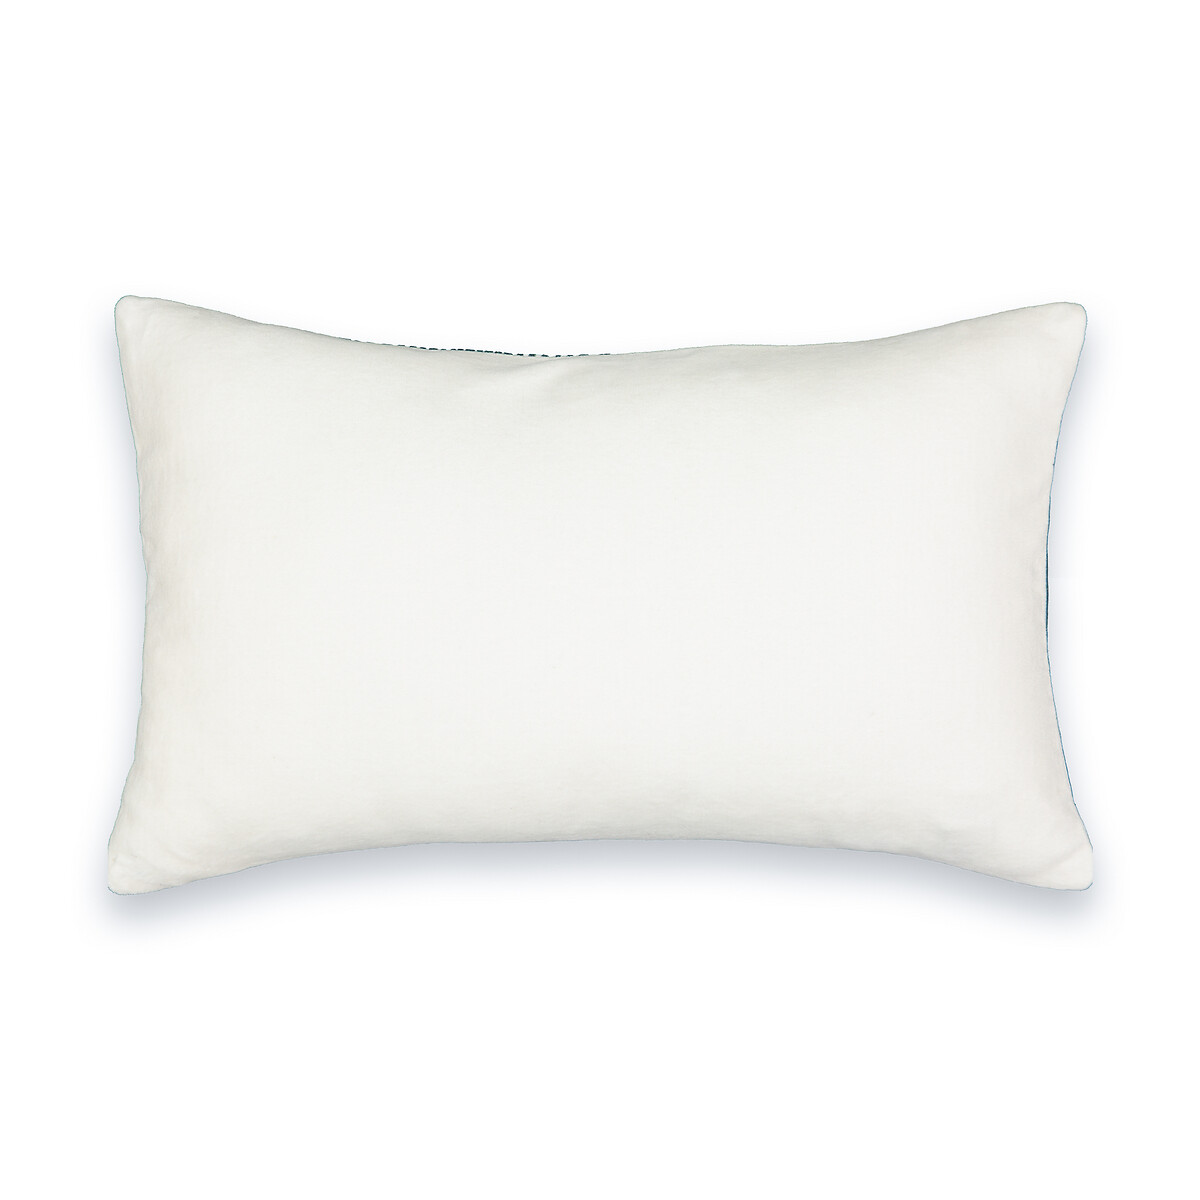 Чехол LaRedoute На подушку из хлопкового велюра Valry 50 x 30 см белый, размер 50 x 30 см - фото 2